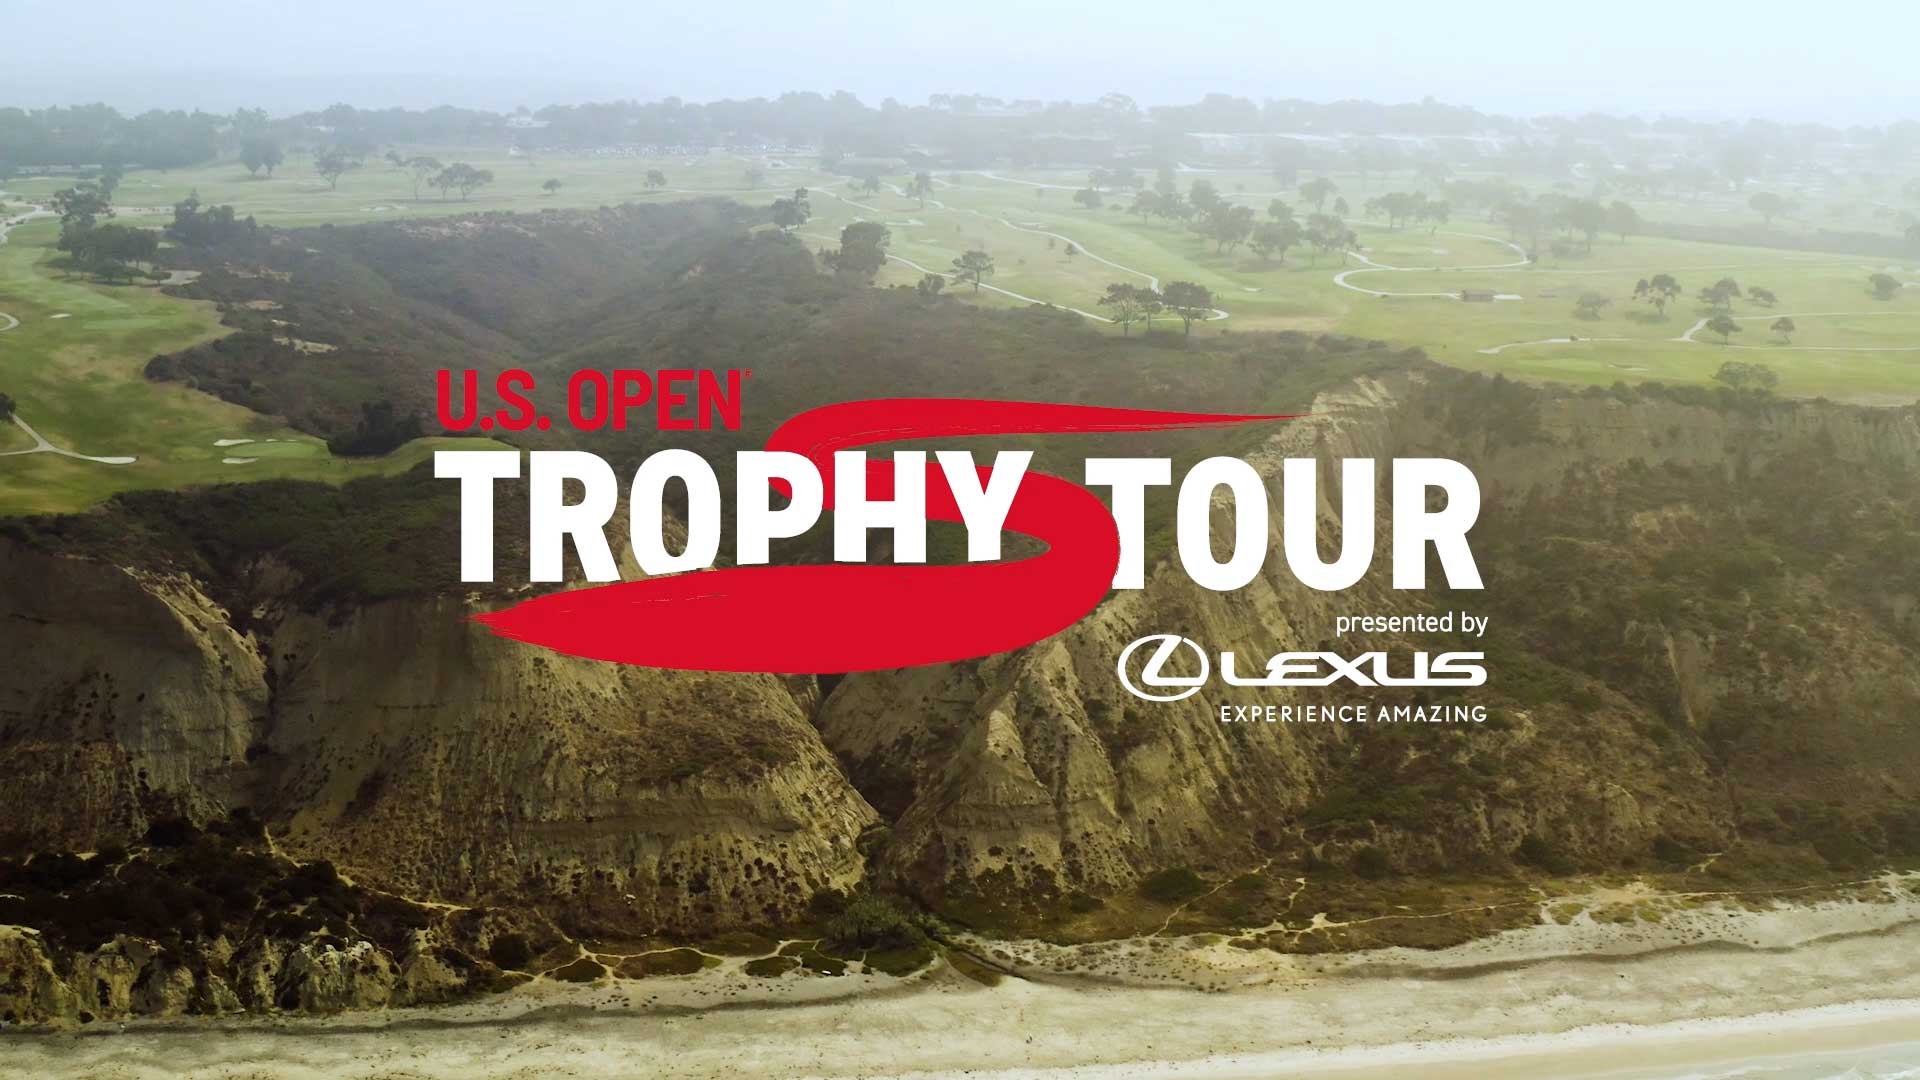 Golf Digest — US Open Trophy Tour